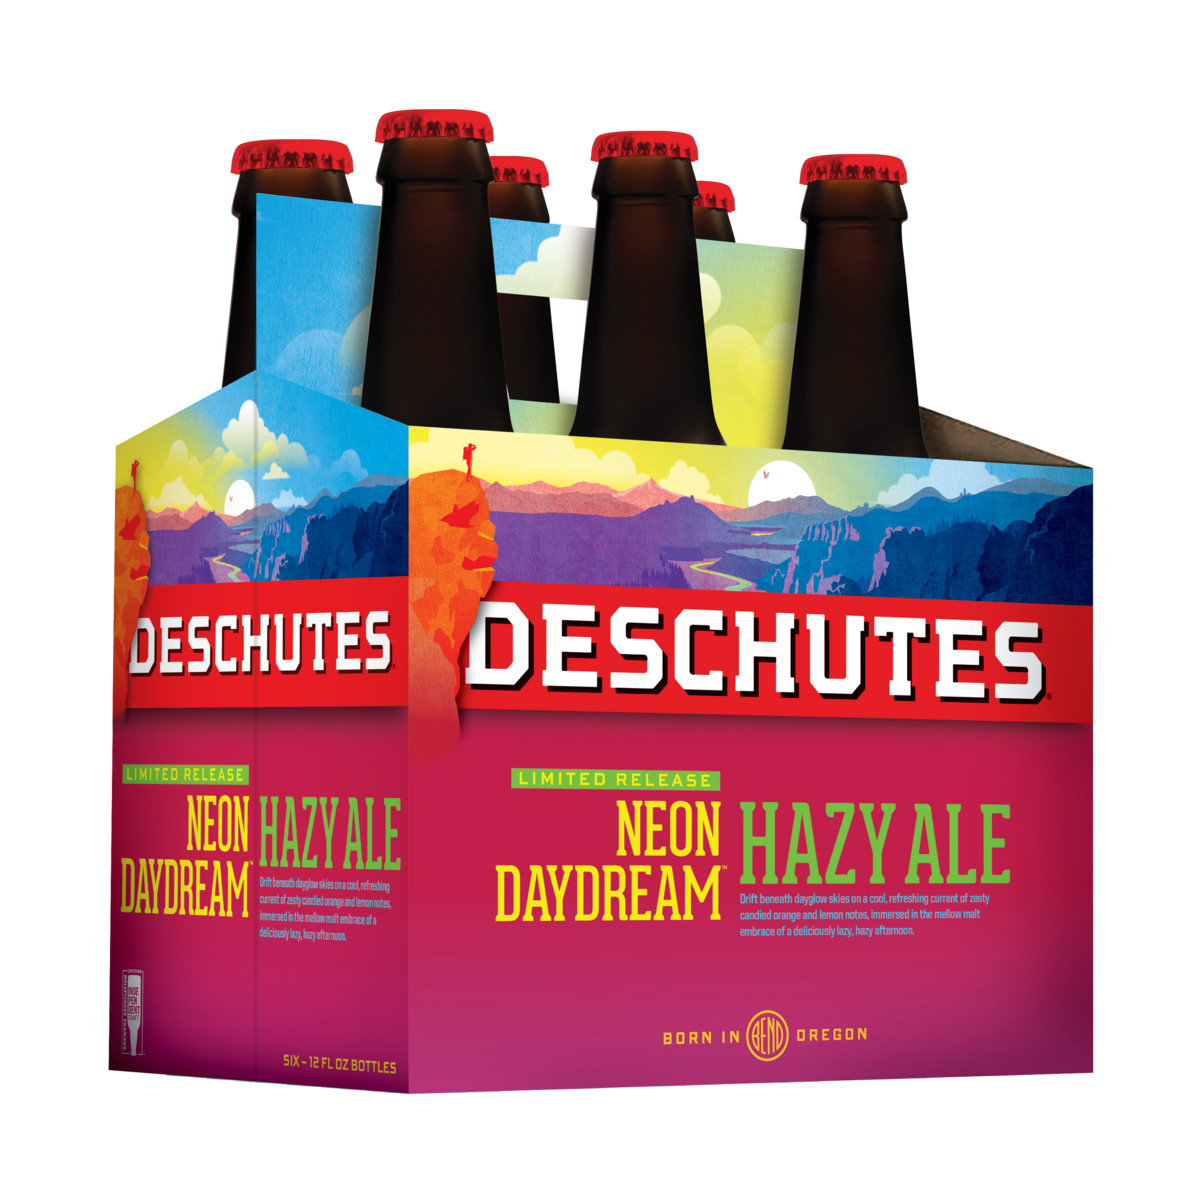 Deschutes Neon Daydream Hazy Ale 6-pack